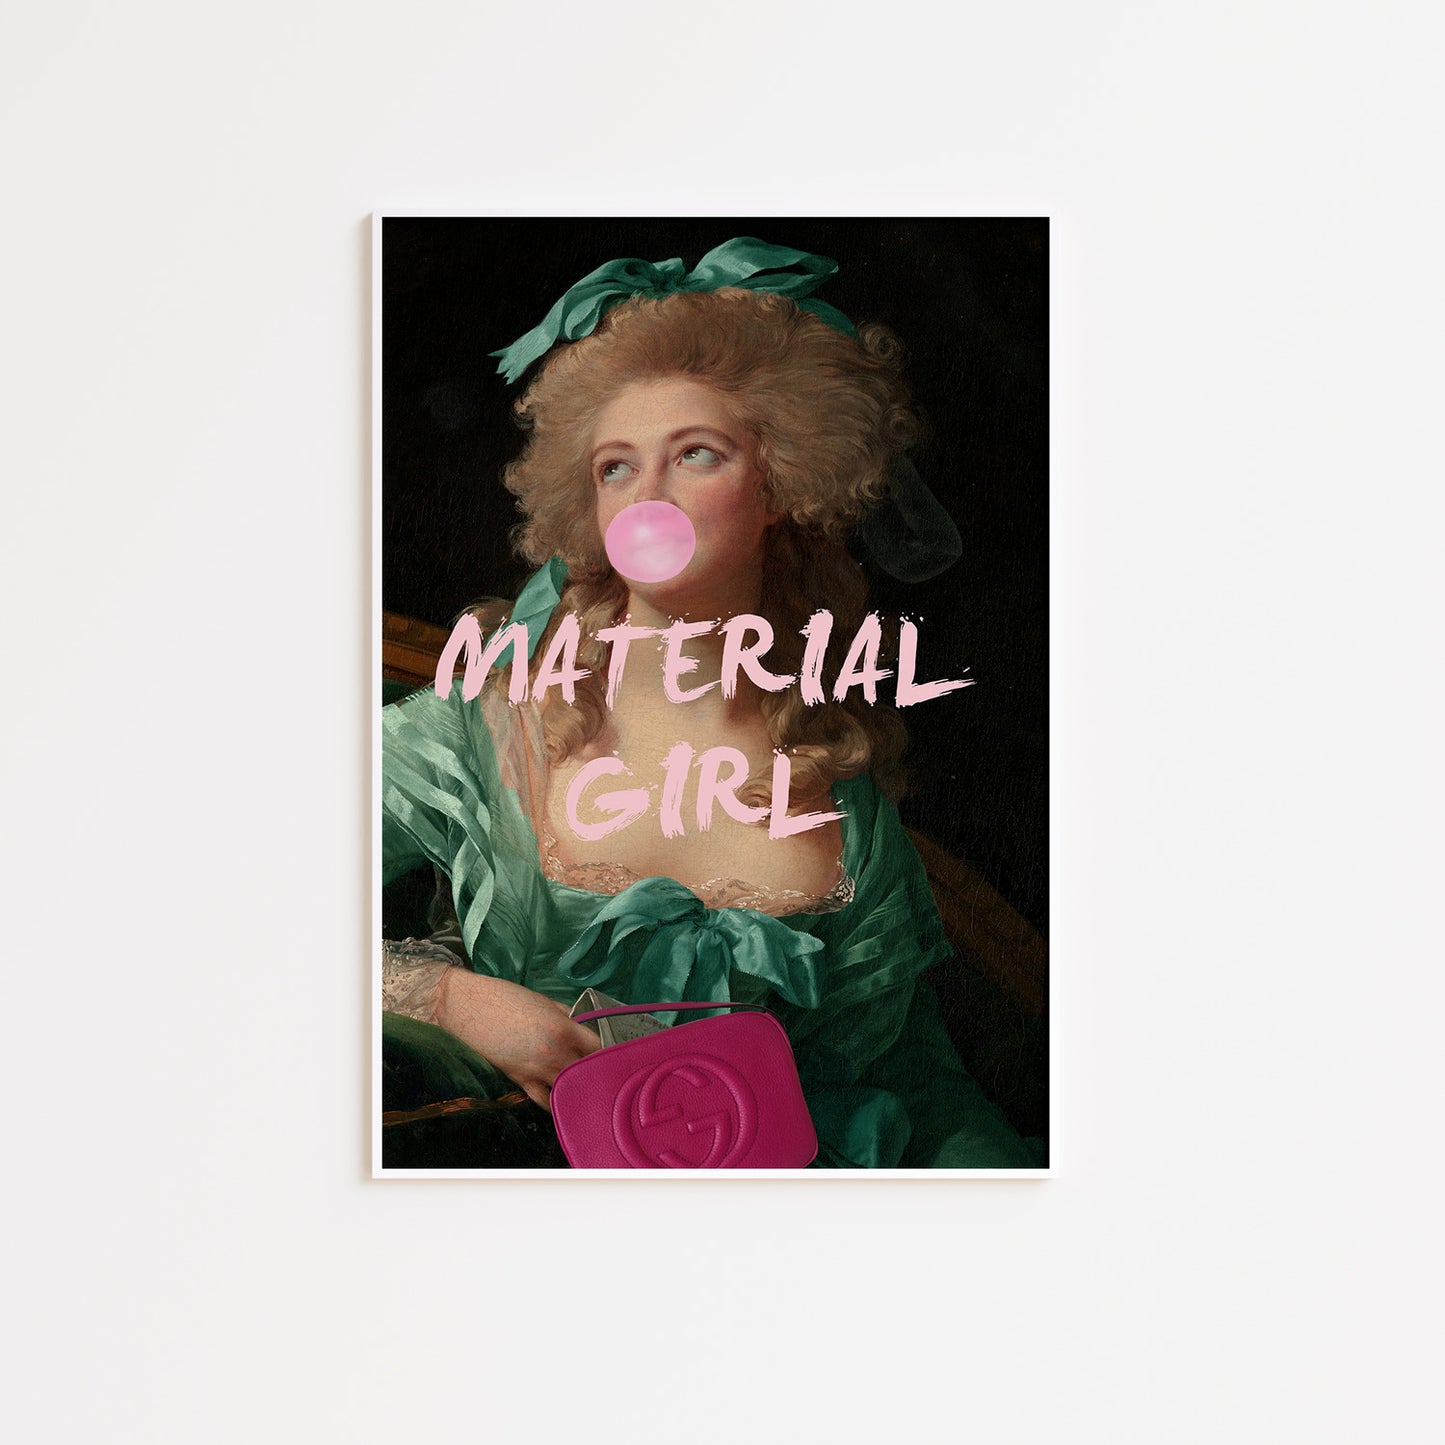 Material Girl Altered Art Poster